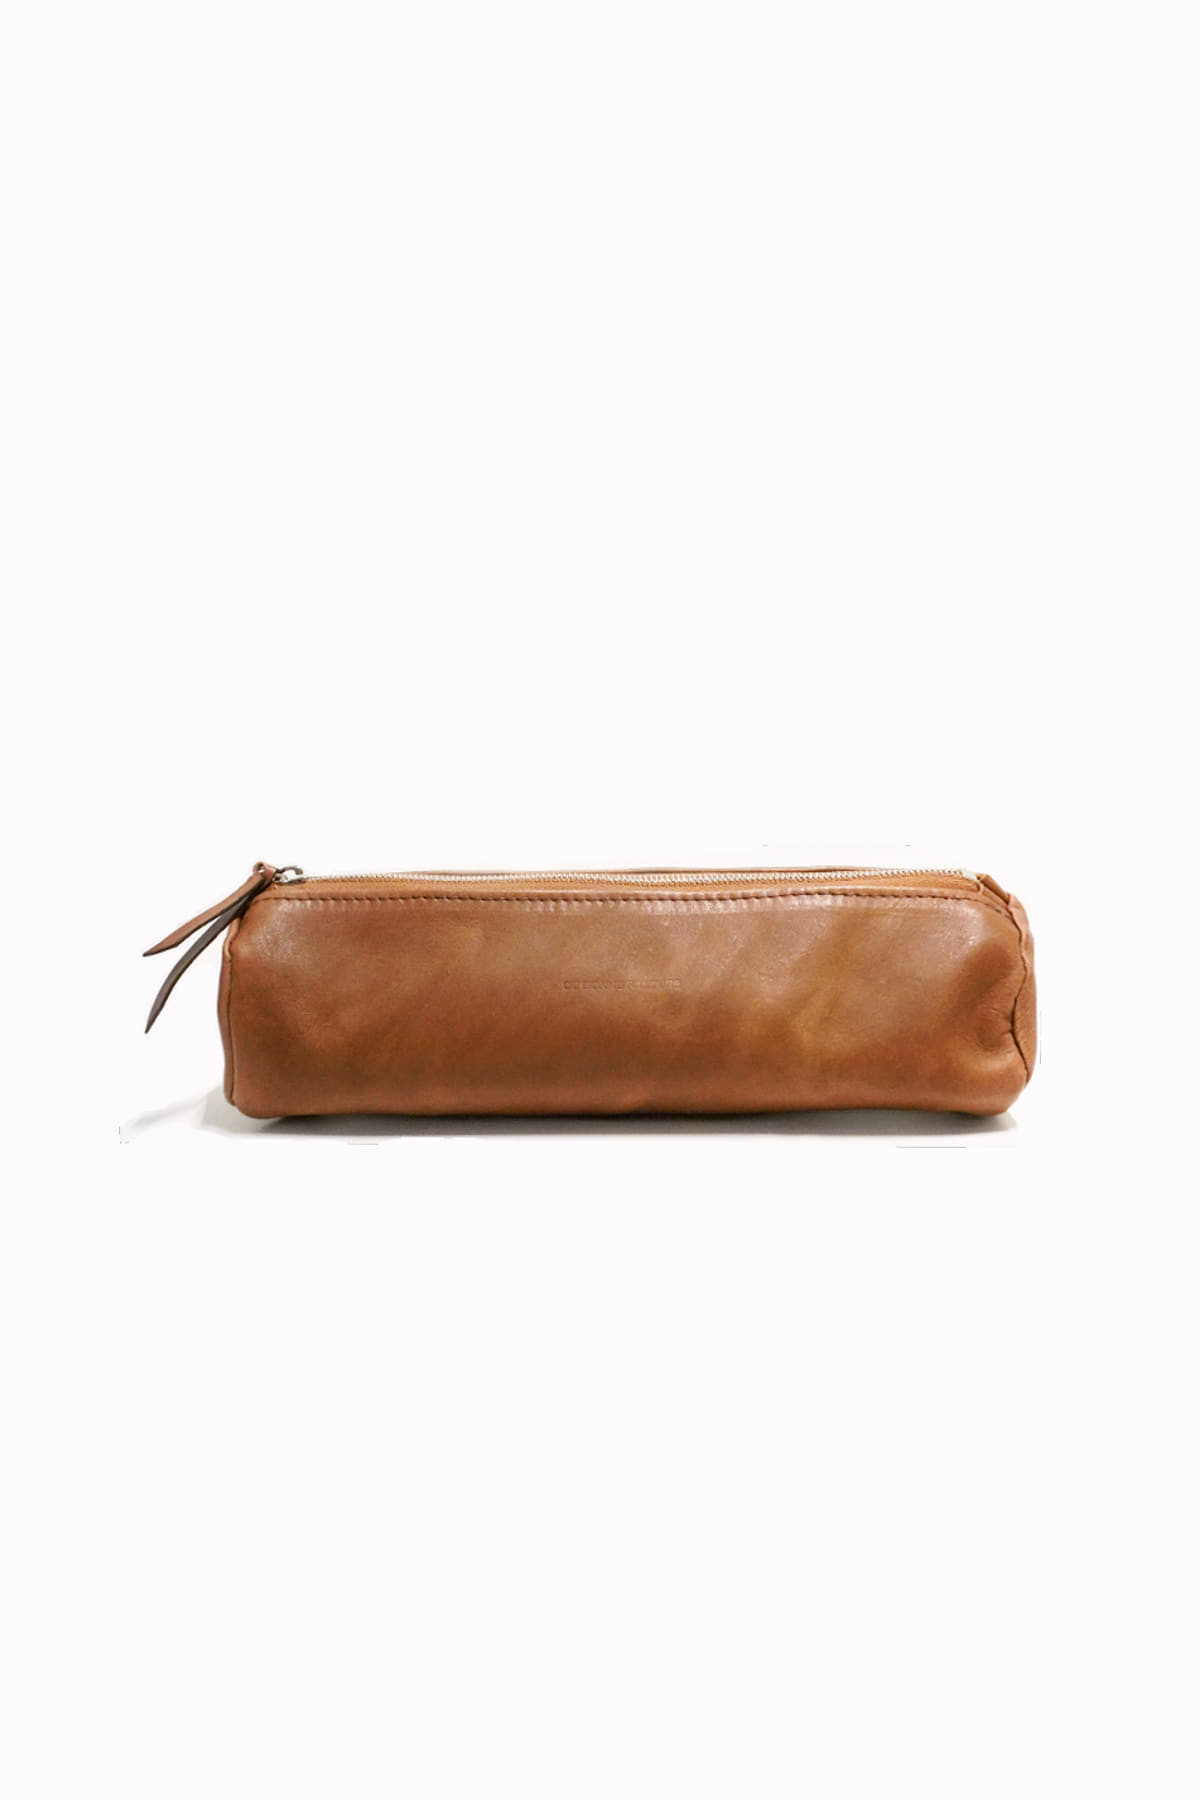 [DE BONNE FACTURE] Leather Pencil Case – Tobacco